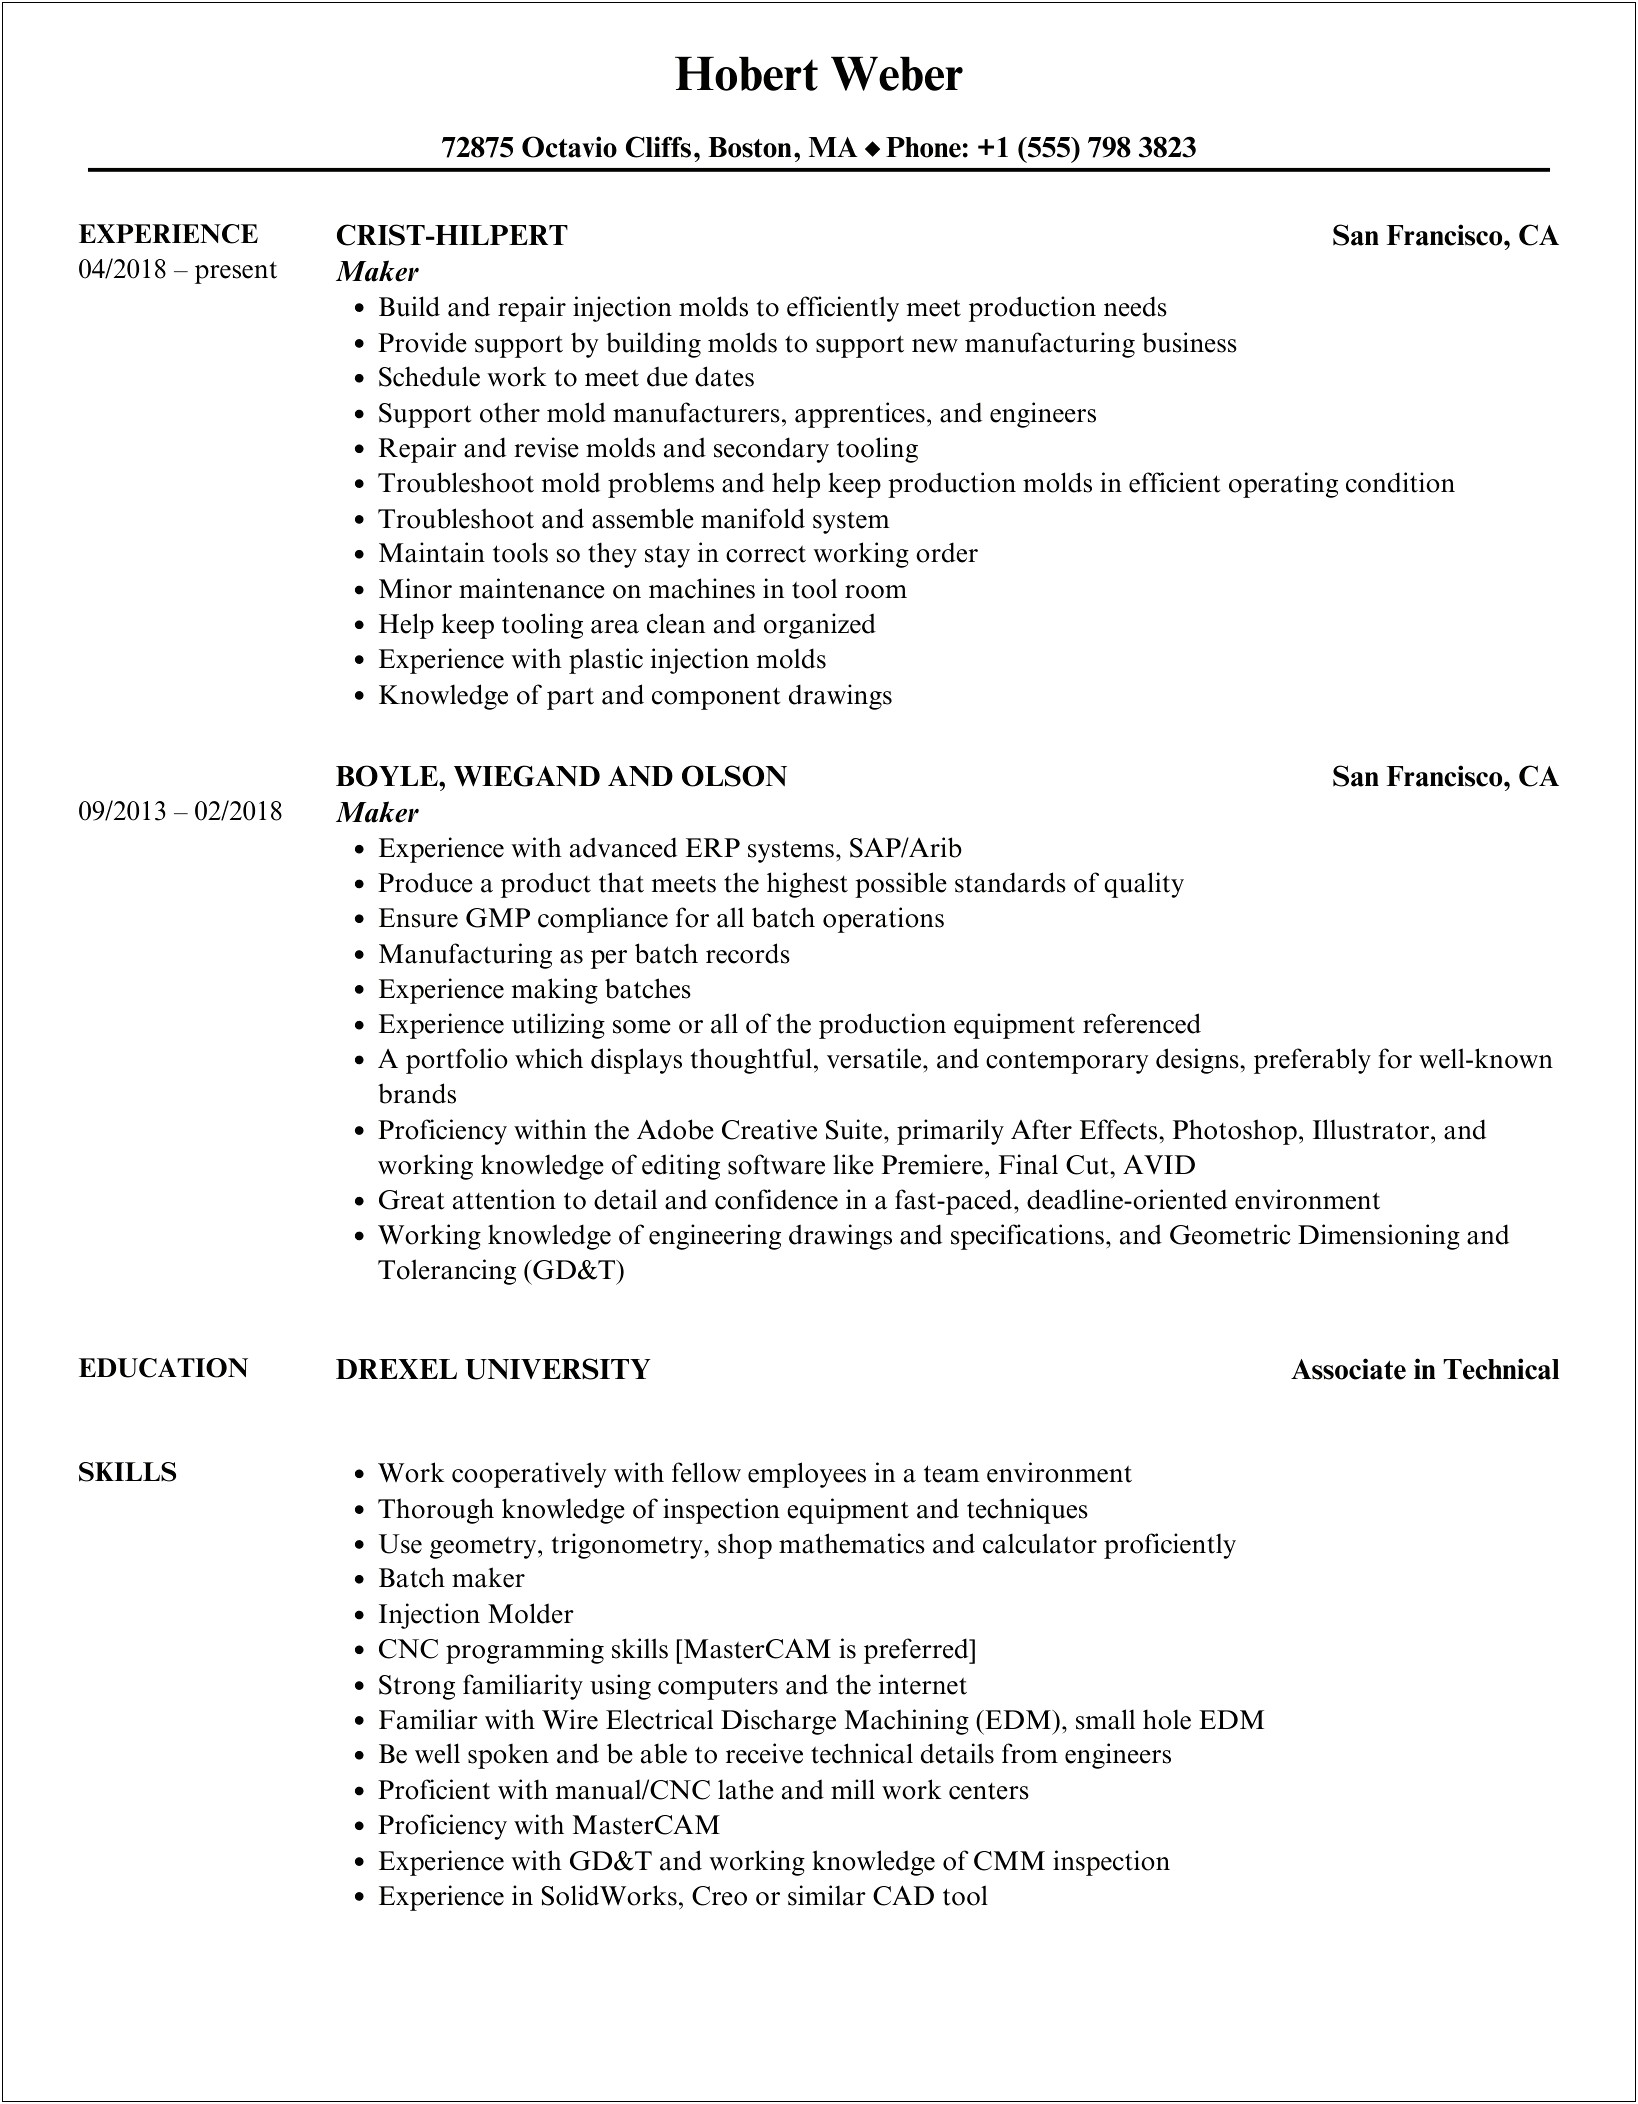 Resume Job Description For Snoball Maker